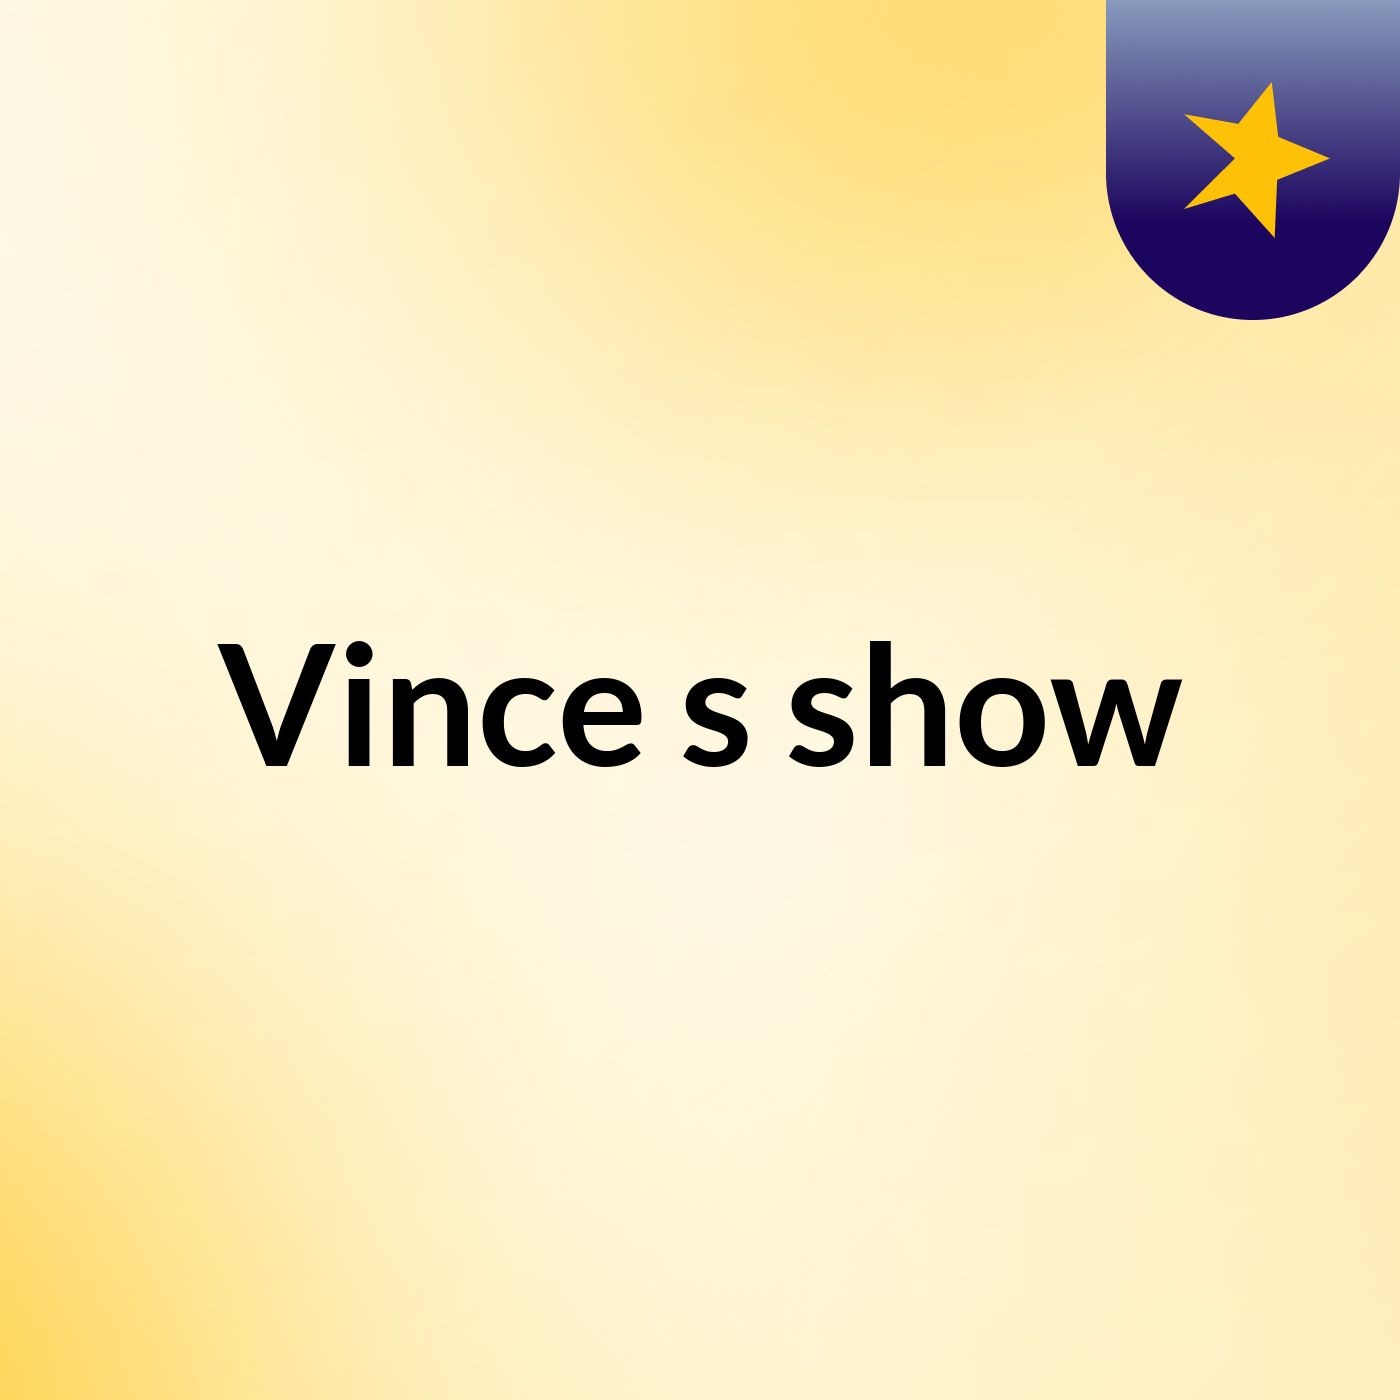 Vince's show